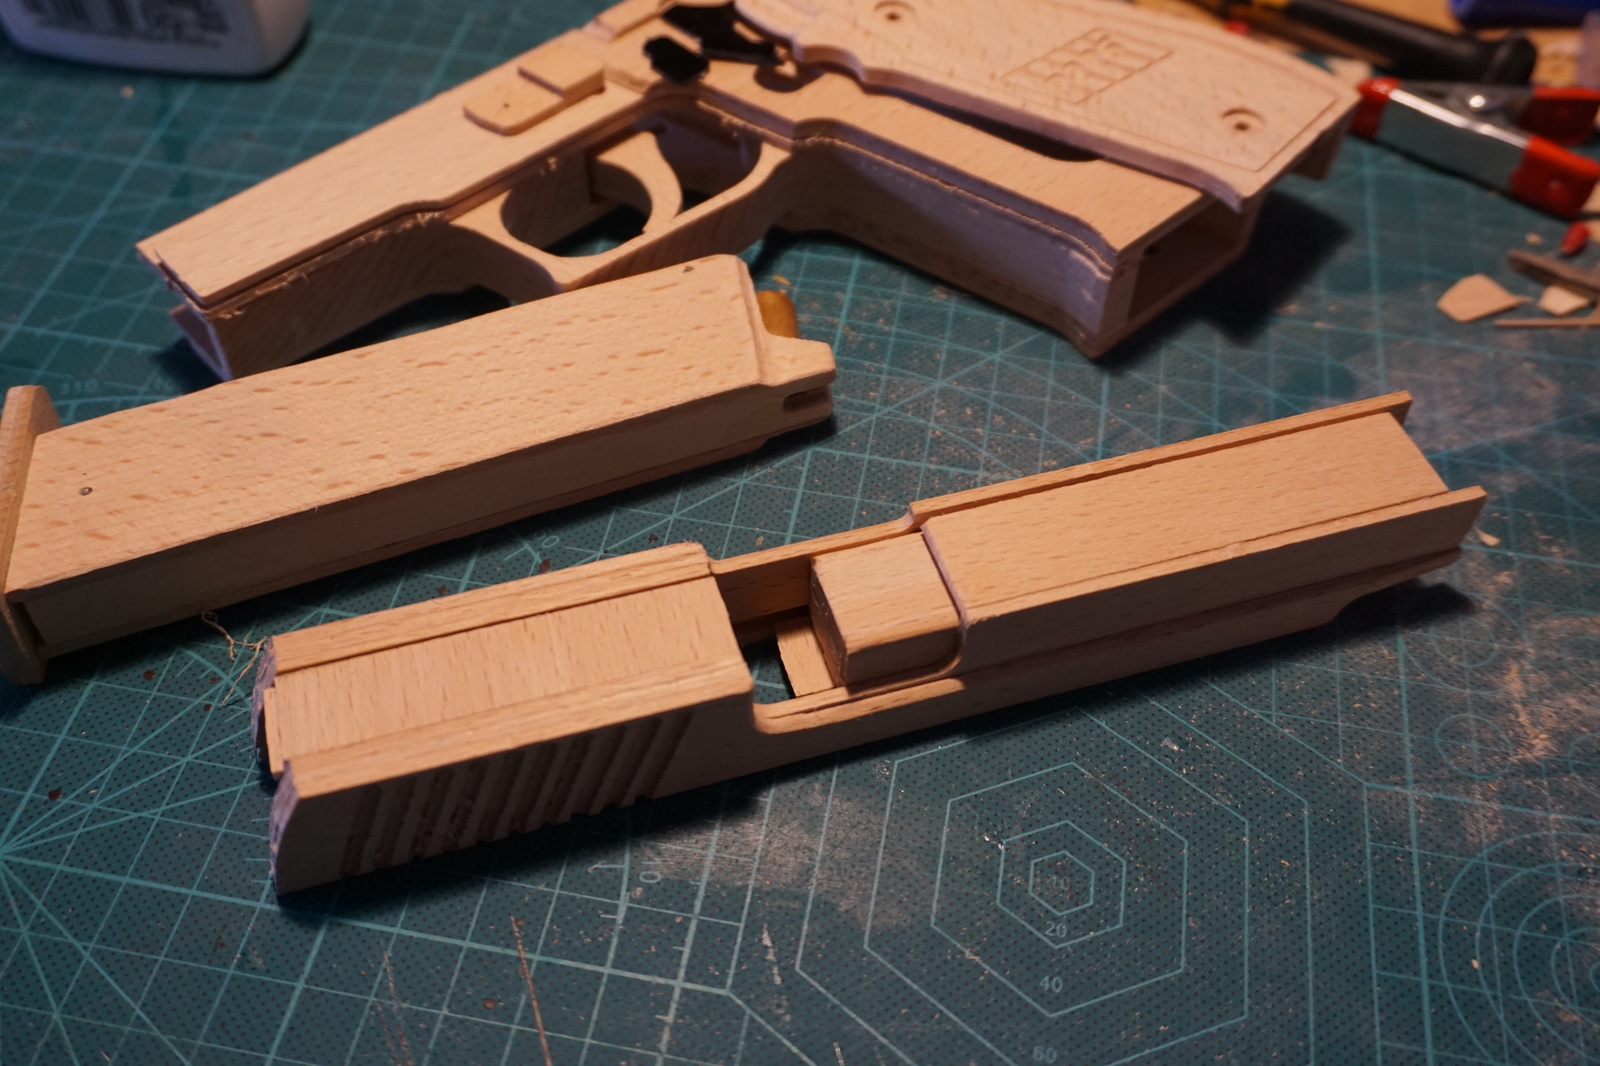 Пистолет SigSauer P226 из дерева можно, больше, резинками, почти, сделано, начало, коробить, Возможна, конструкцию, инструкции, оказлся, фатален, полная, разборка, Источник, производство, своего, работает, Видео, прототипа